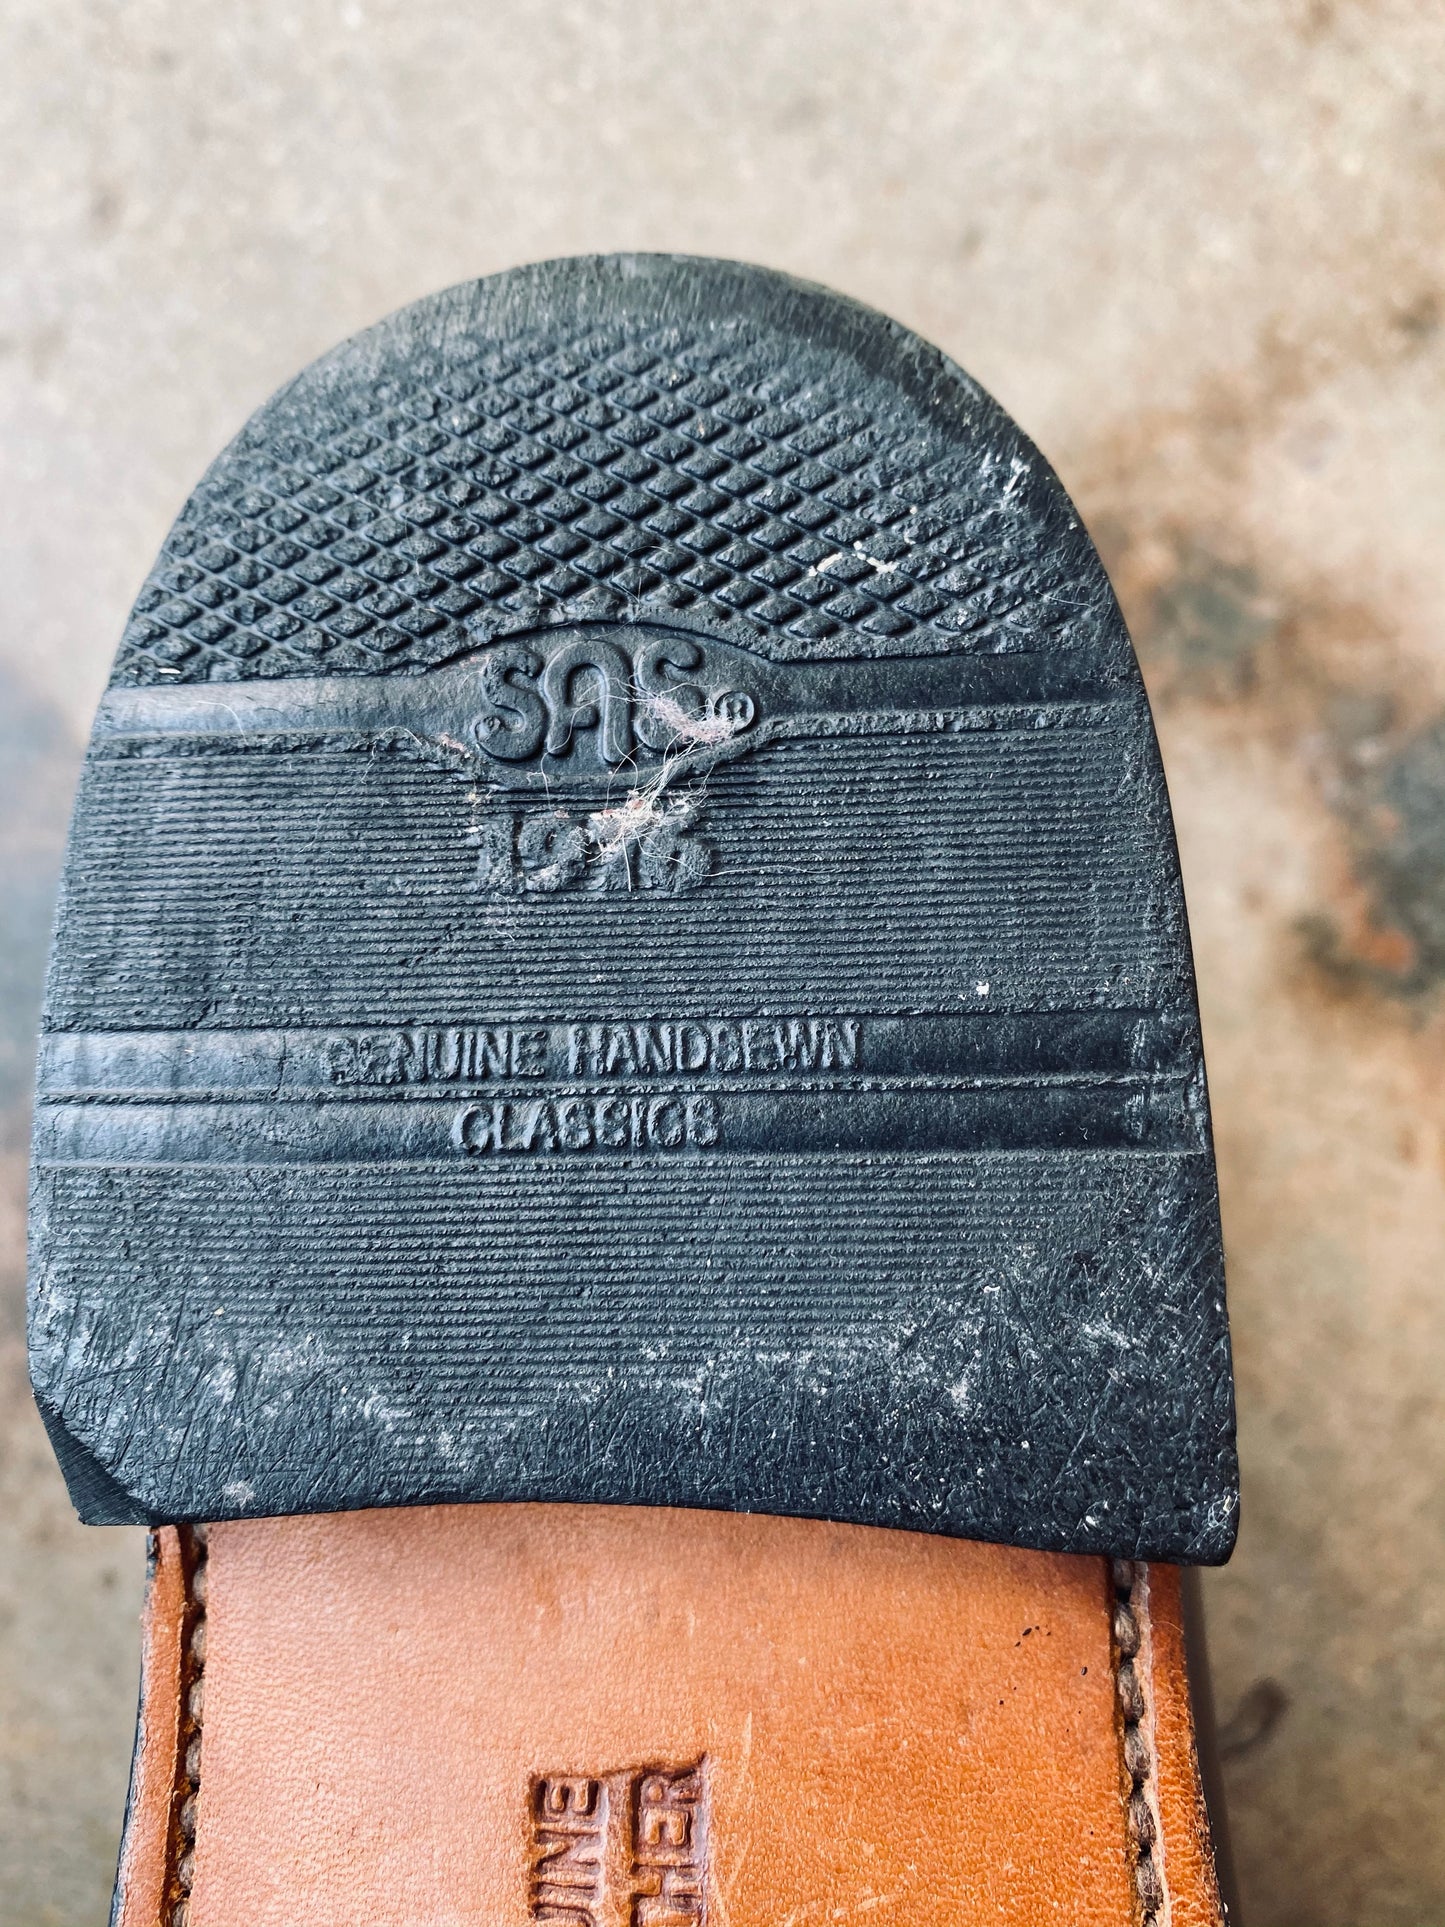 Vintage SAS Leather Penny Loafer | M10